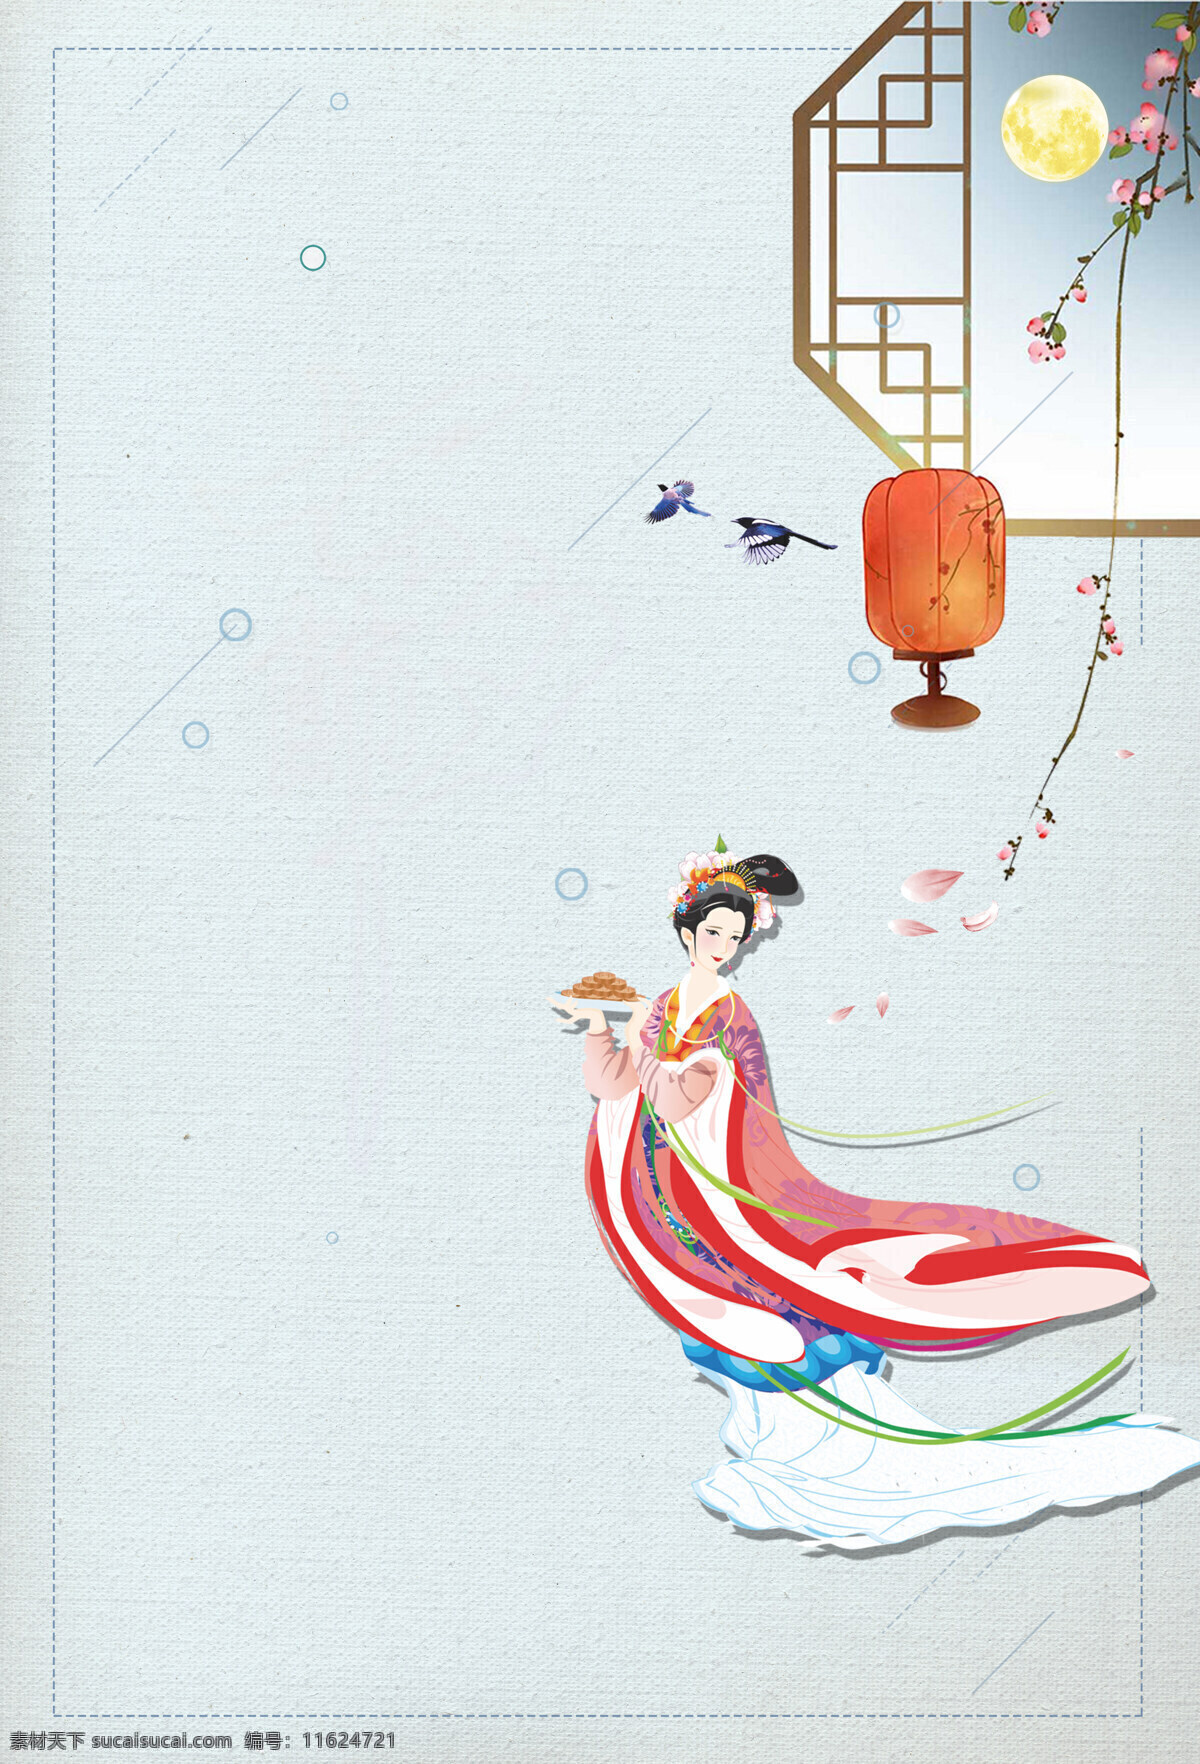 中秋 团圆 月饼 背景 中国风 节日 灯笼 窗格 圆月 仙子 广告背景